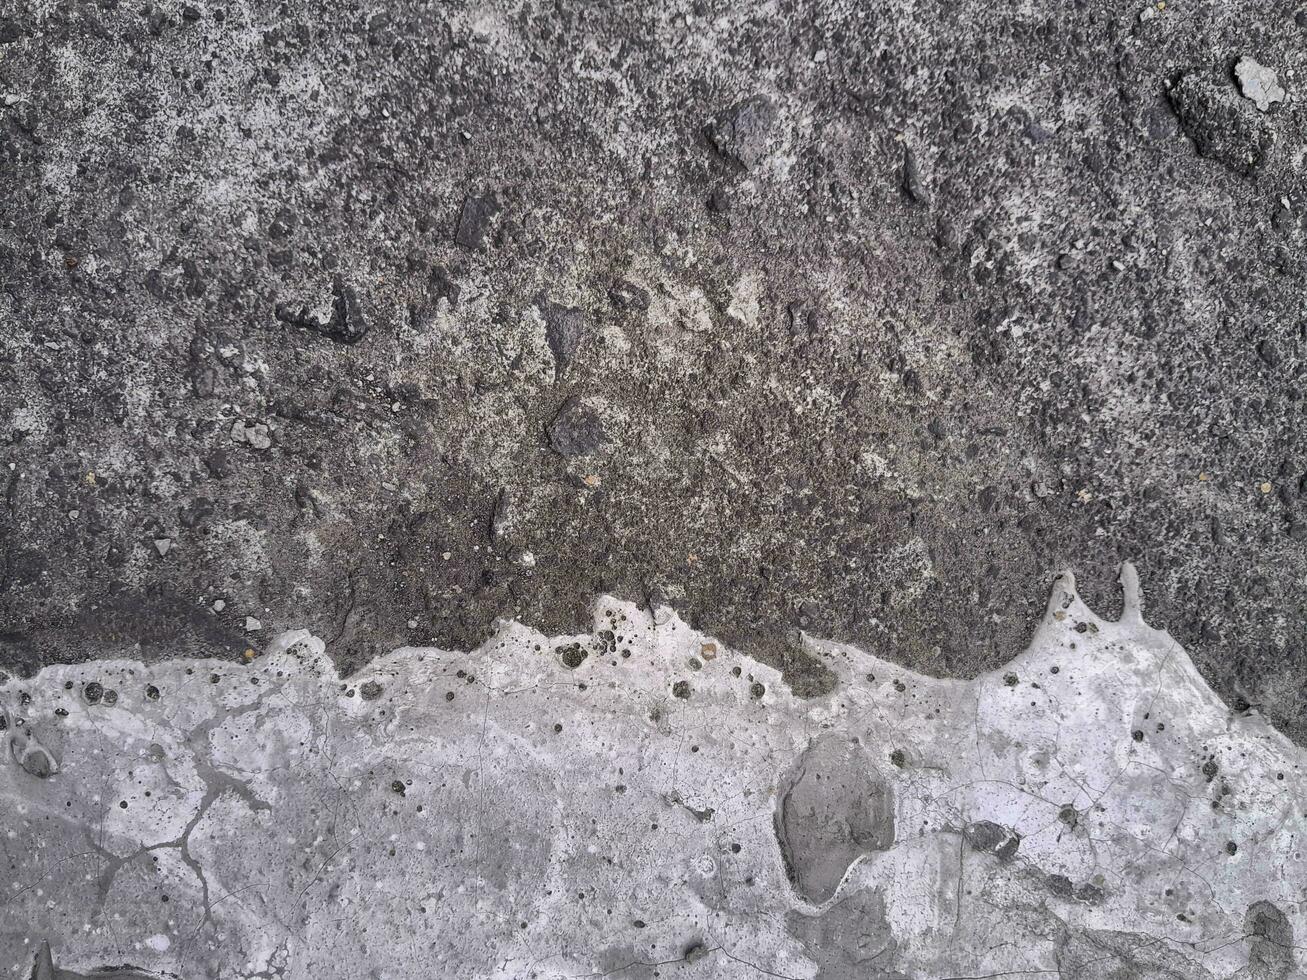 grungy Mauer von grau Beton Textur mit geknackt Oberfläche von Sand und Zement Materialien. foto